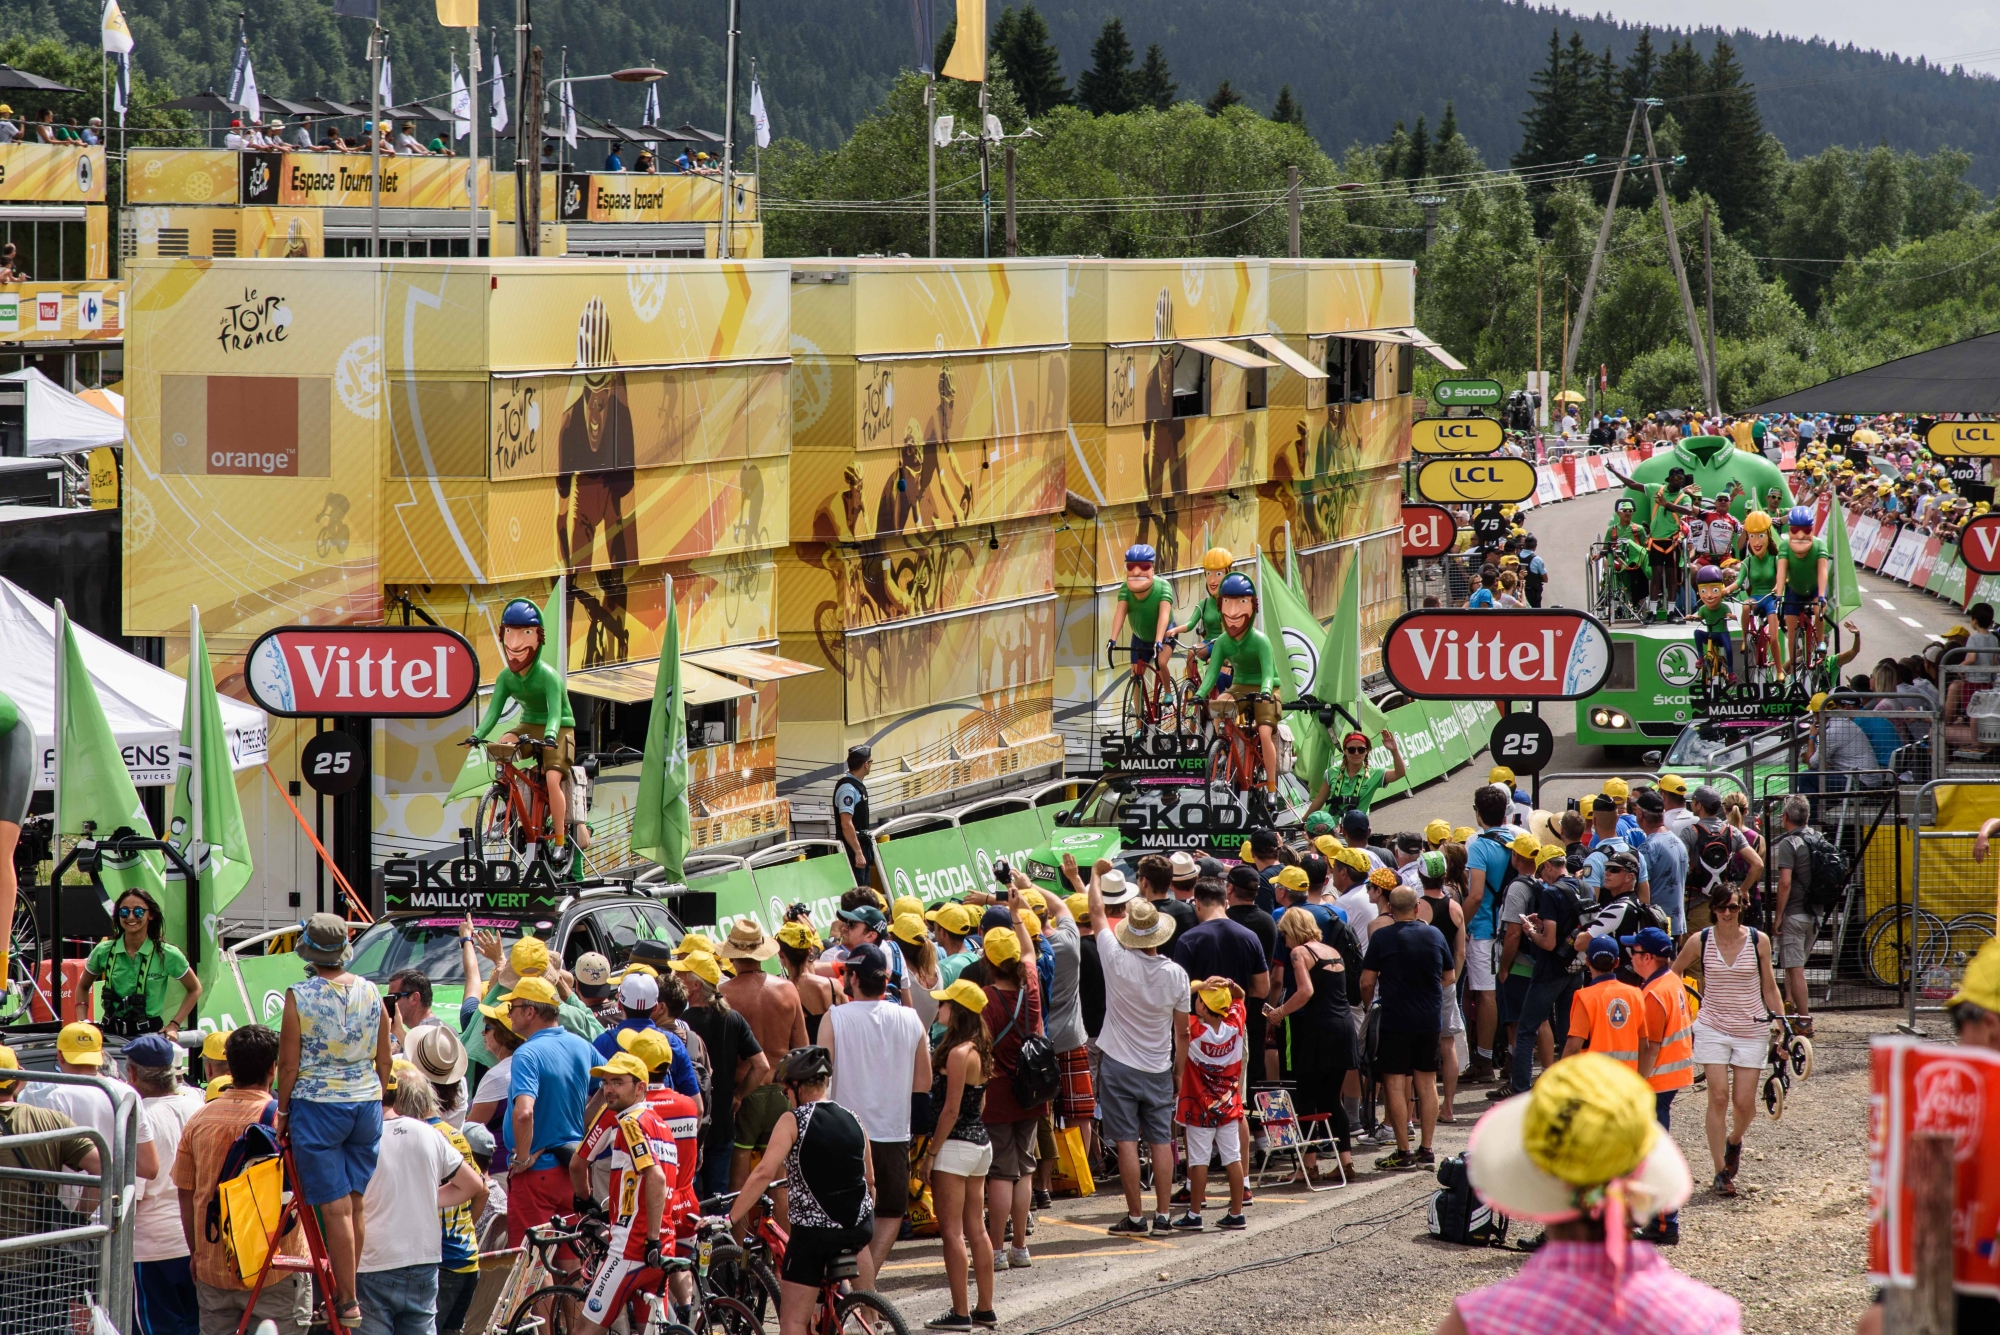 Les Rousses, Lamoura, samedi 8 juillet 2017, arrivée du Tour de France, reportage sur l'ambiance dans le site, l'attente et ambiances sur le site, photos Cédric Sandoz